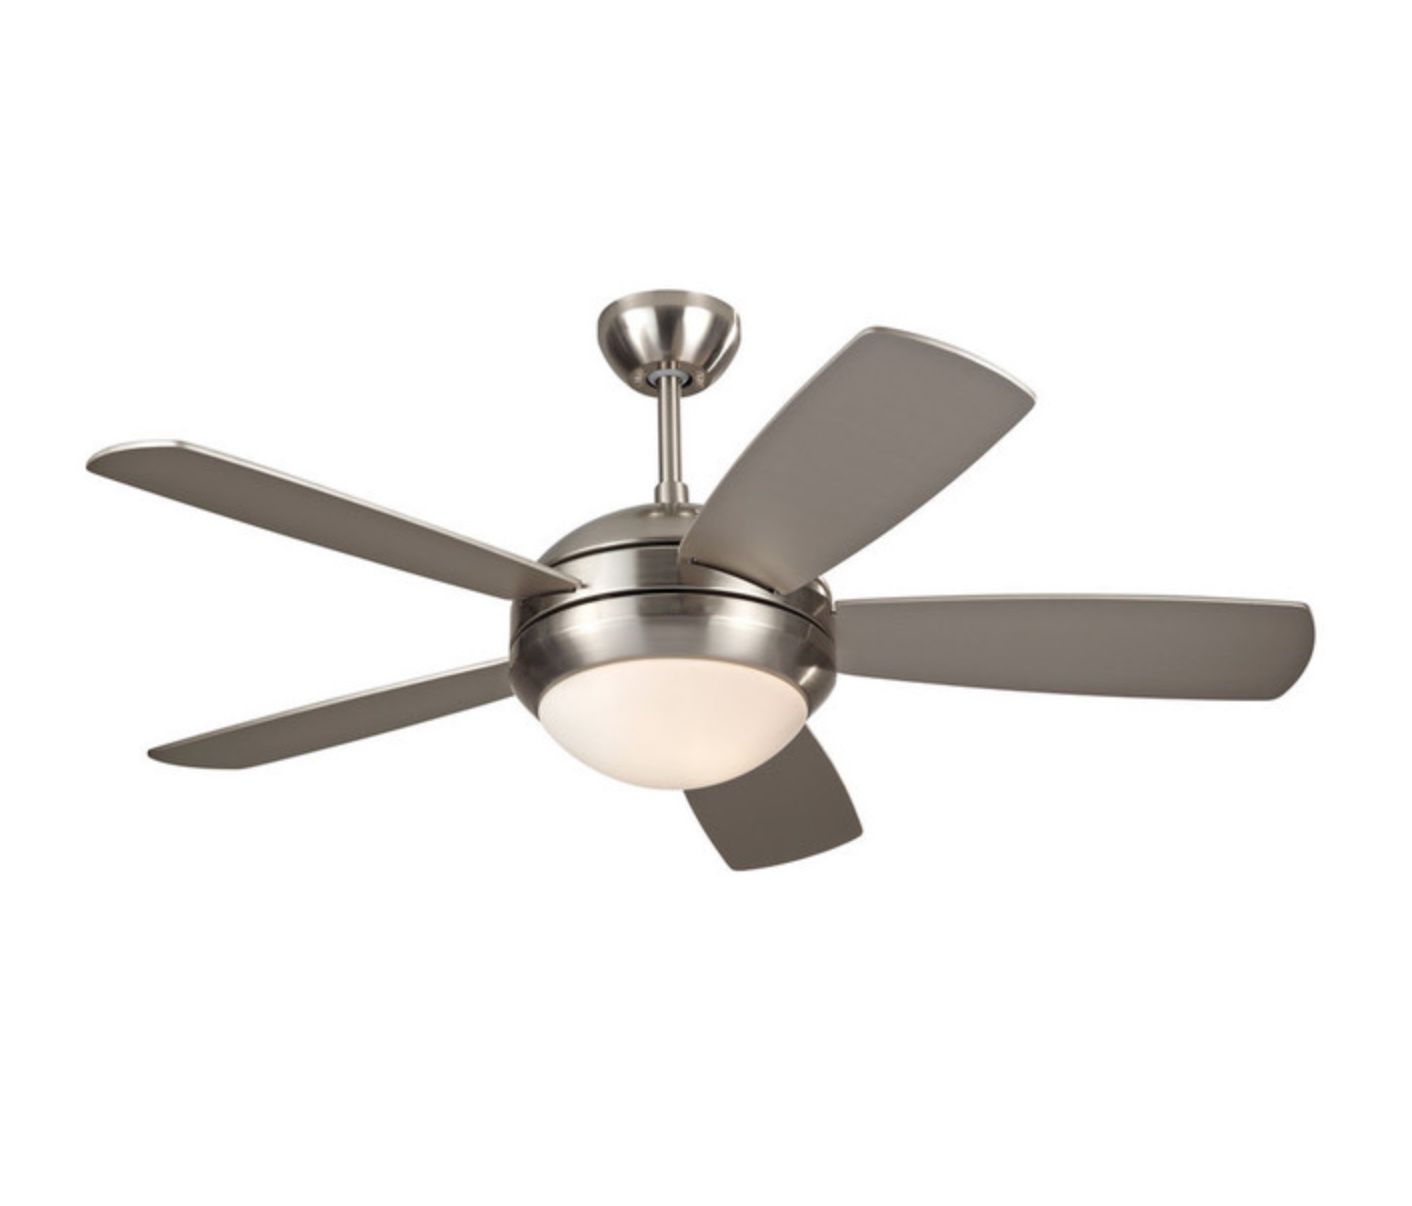 42” Casa Probe Brushed Nickel Ceiling Fan & Light Fixture - LIKE NEW!